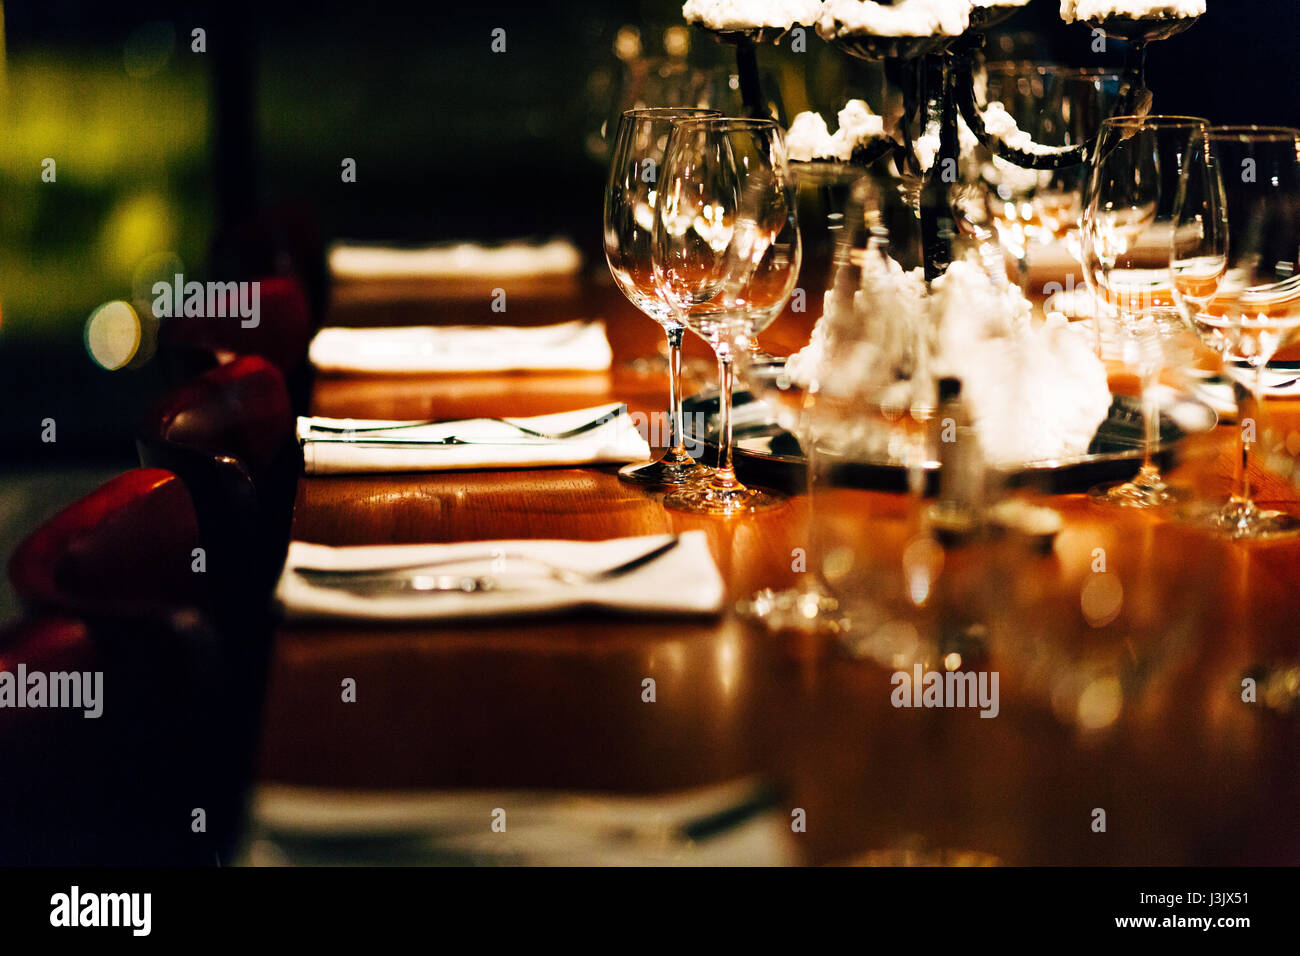 Design-Details der Luxus-Veranstaltungen. Dinge wie schöne Tabelle Einstellung für das Ereignis bereit. Stockfoto